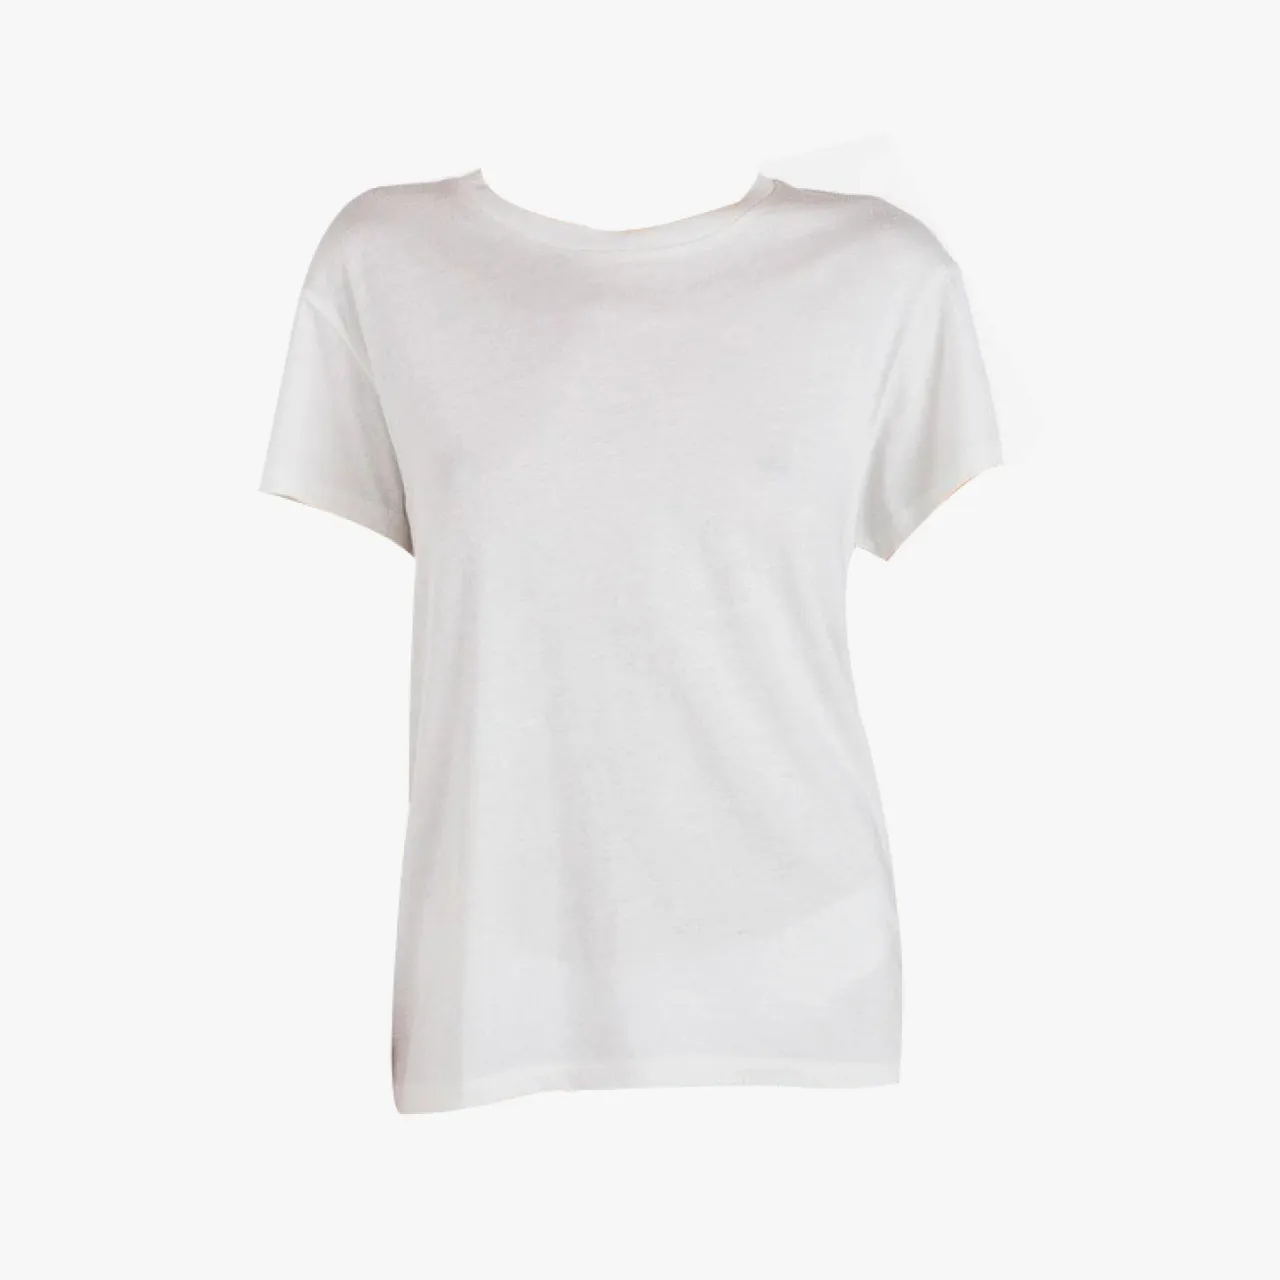 Những mẫu T-shirts trắng được gợi ý bởi Vogue P2